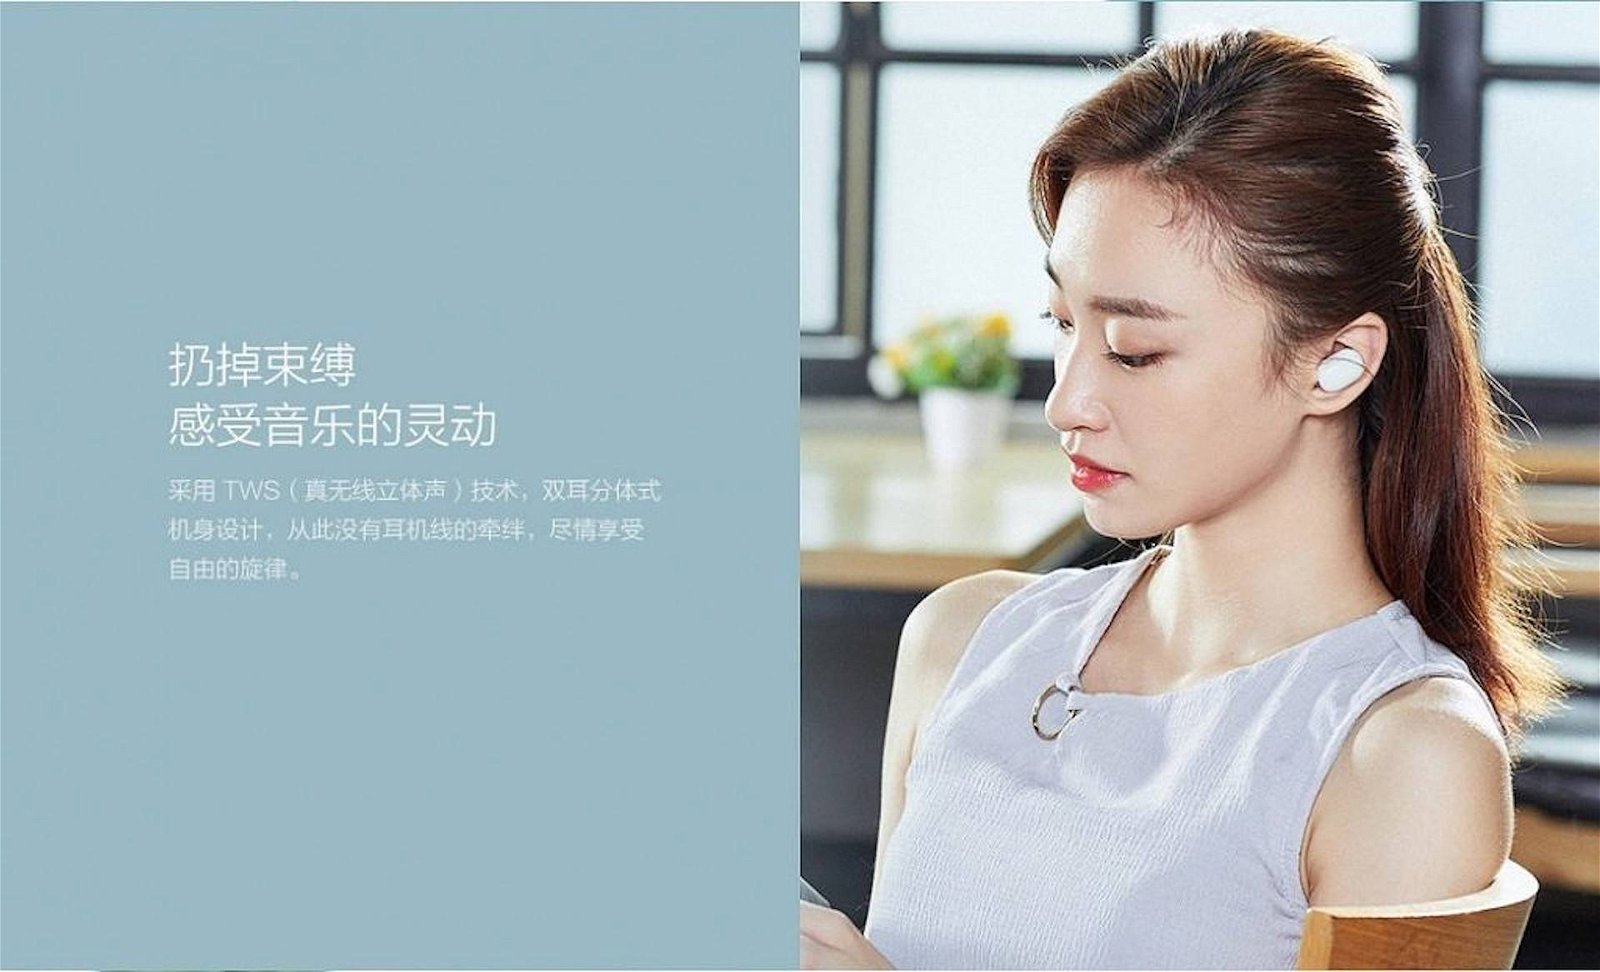 Immagine di Xiaomi presenta AirDots, l’alternativa economica alle AirPods di Apple